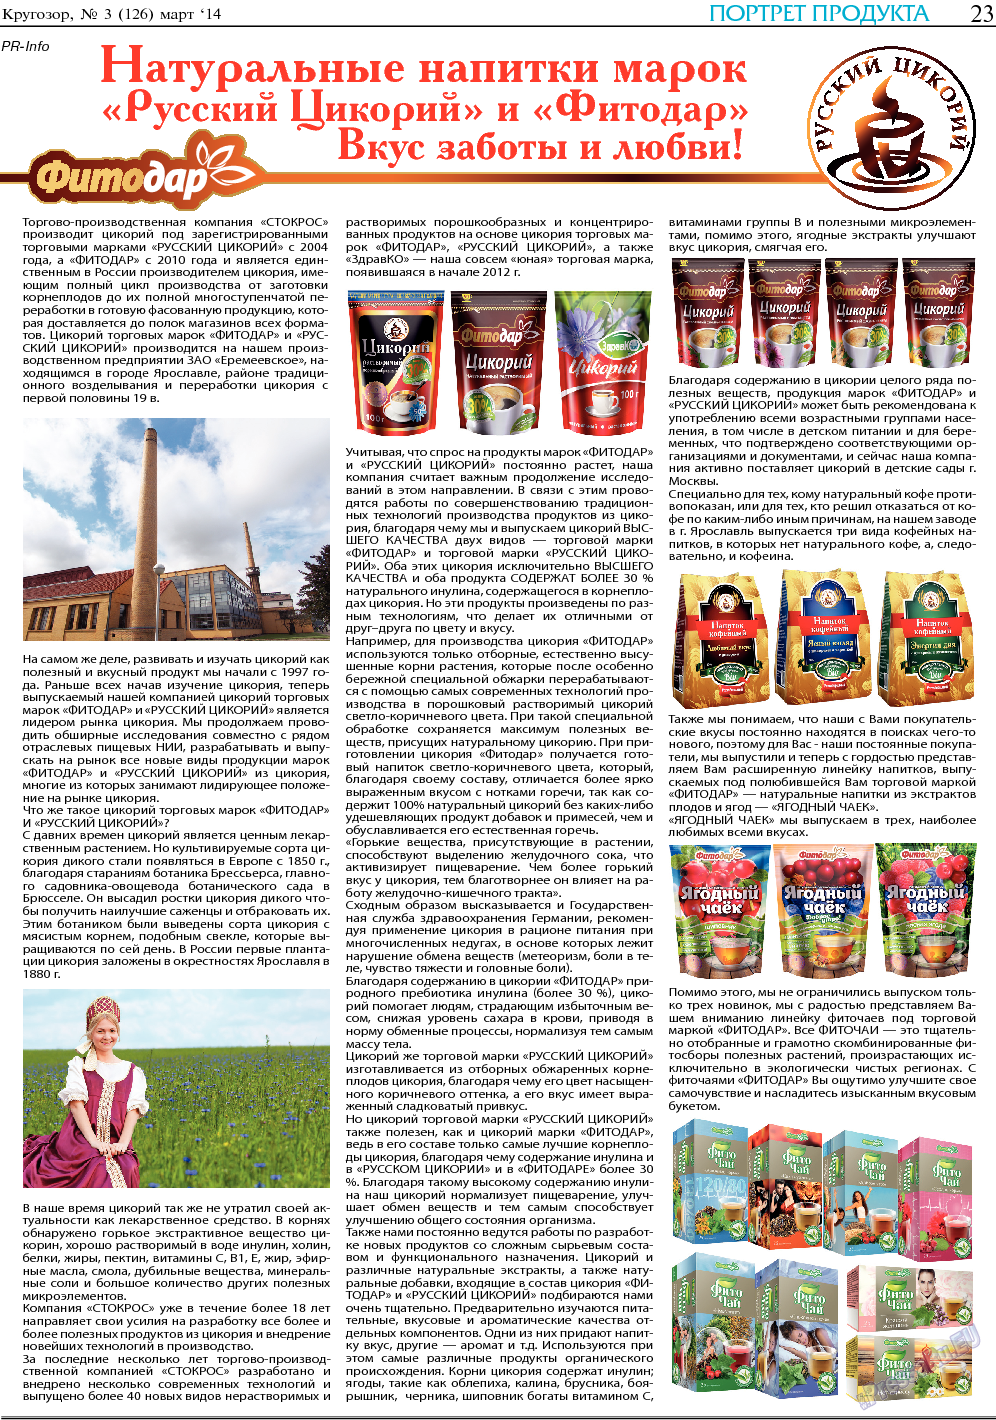 Кругозор, газета. 2014 №3 стр.23